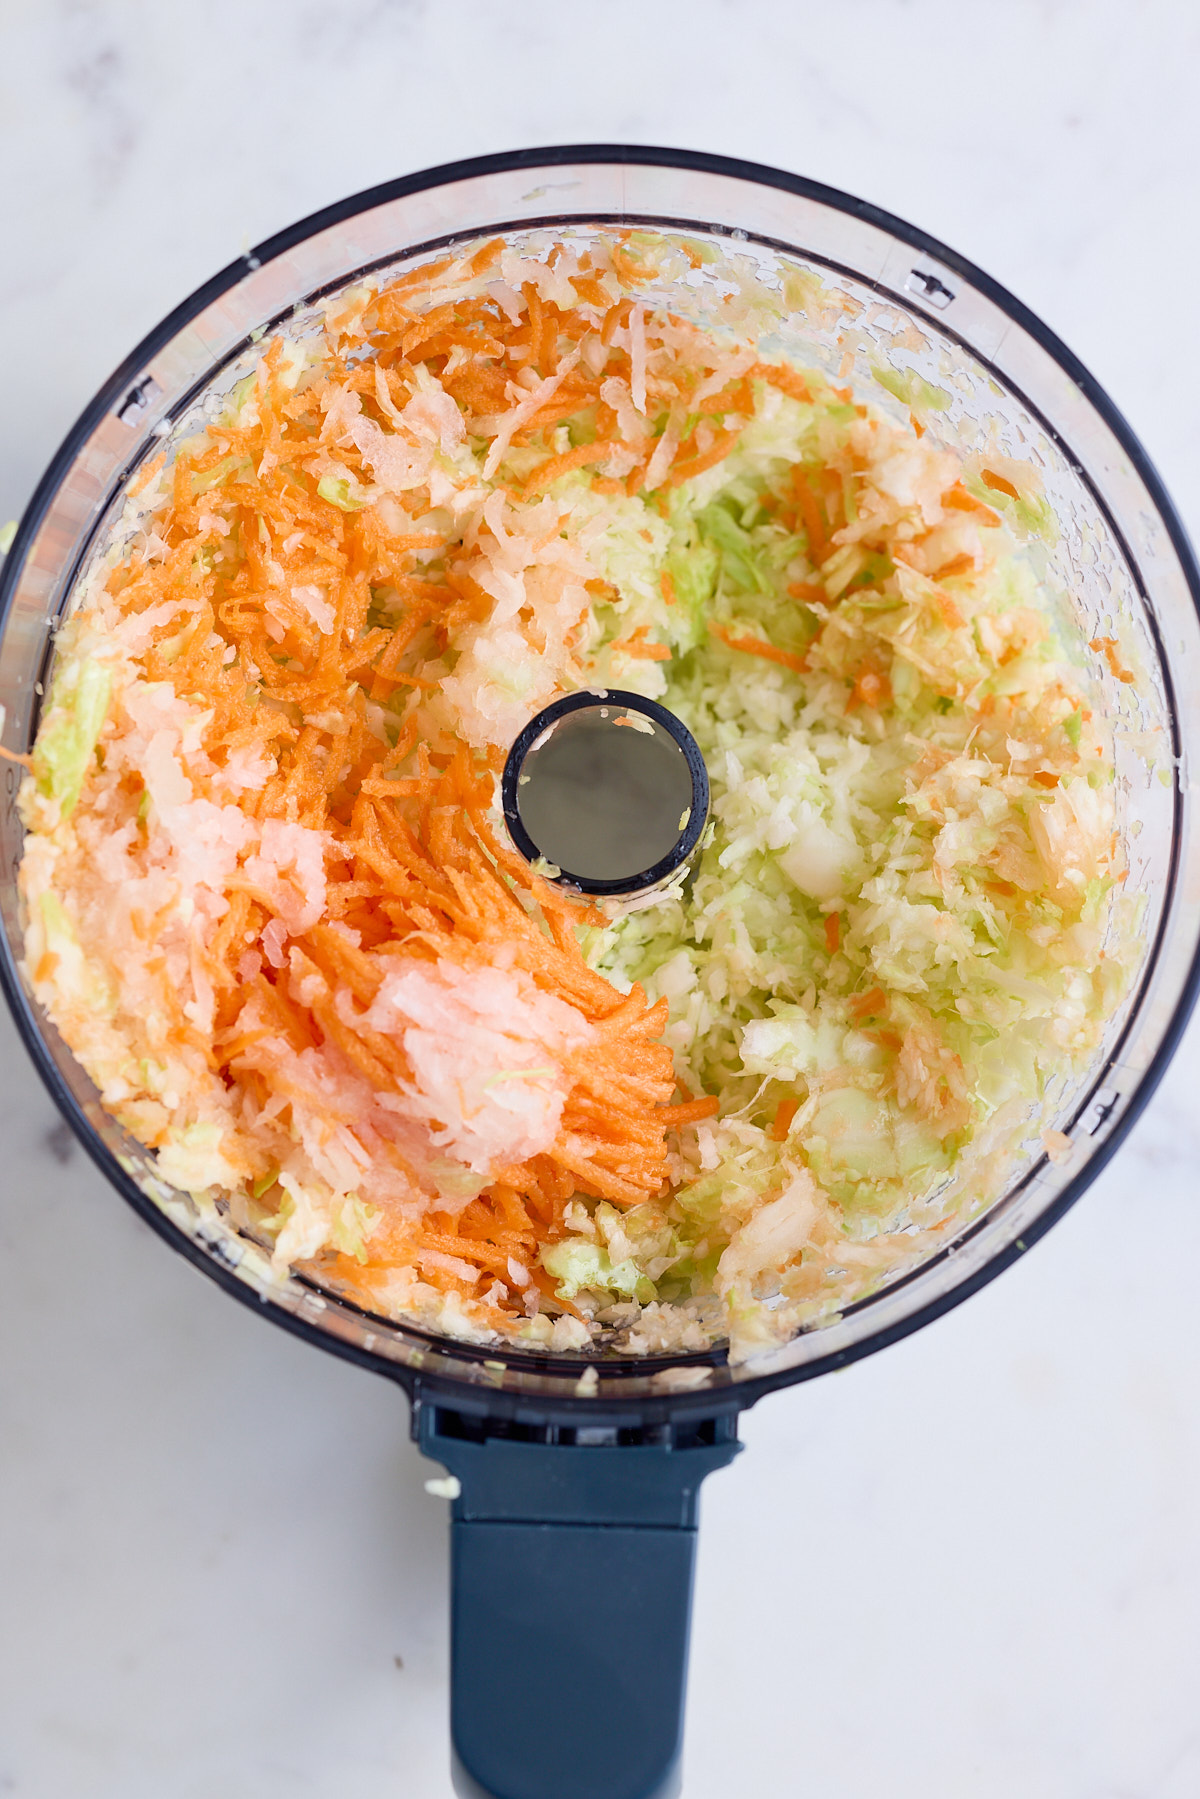 shredded vegetables in food processor bowl